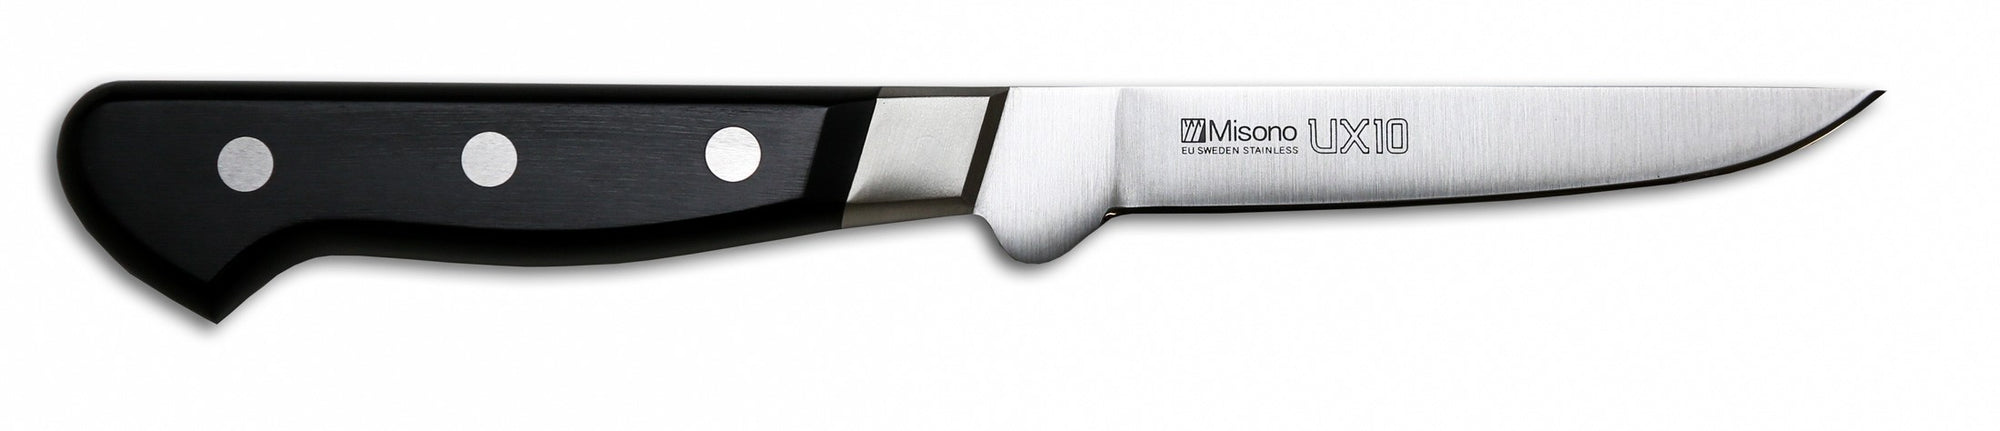 Misono UX10 European-Style Boning Knife, 4.3-inch (110mm) - 743